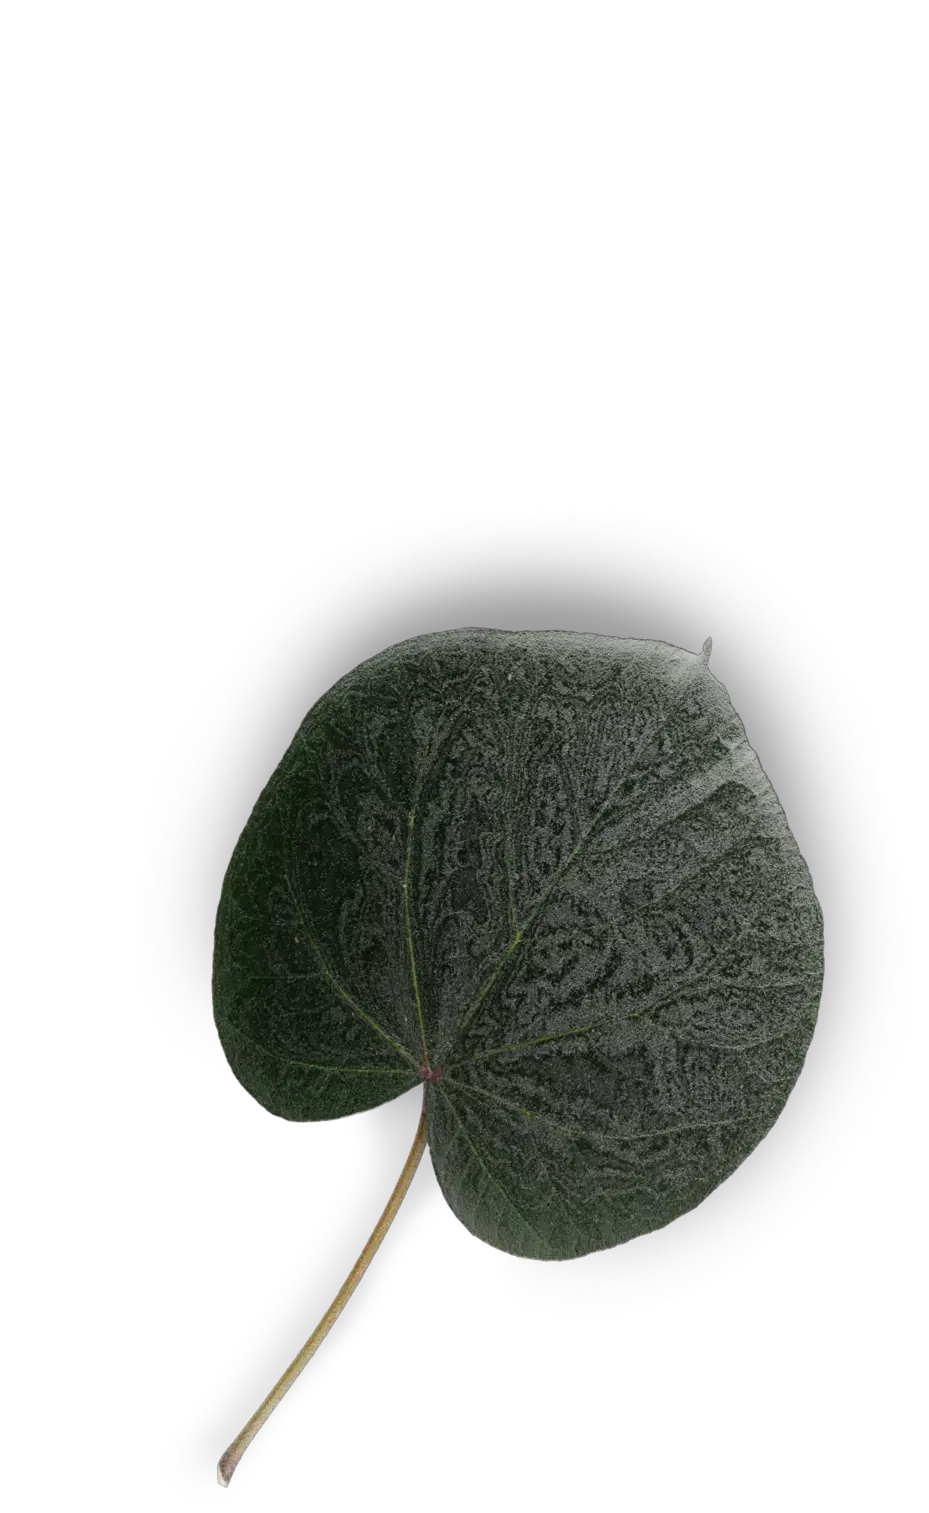 Esempio di superficie incisa con il laser in una texture che ricorda elementi vegetali